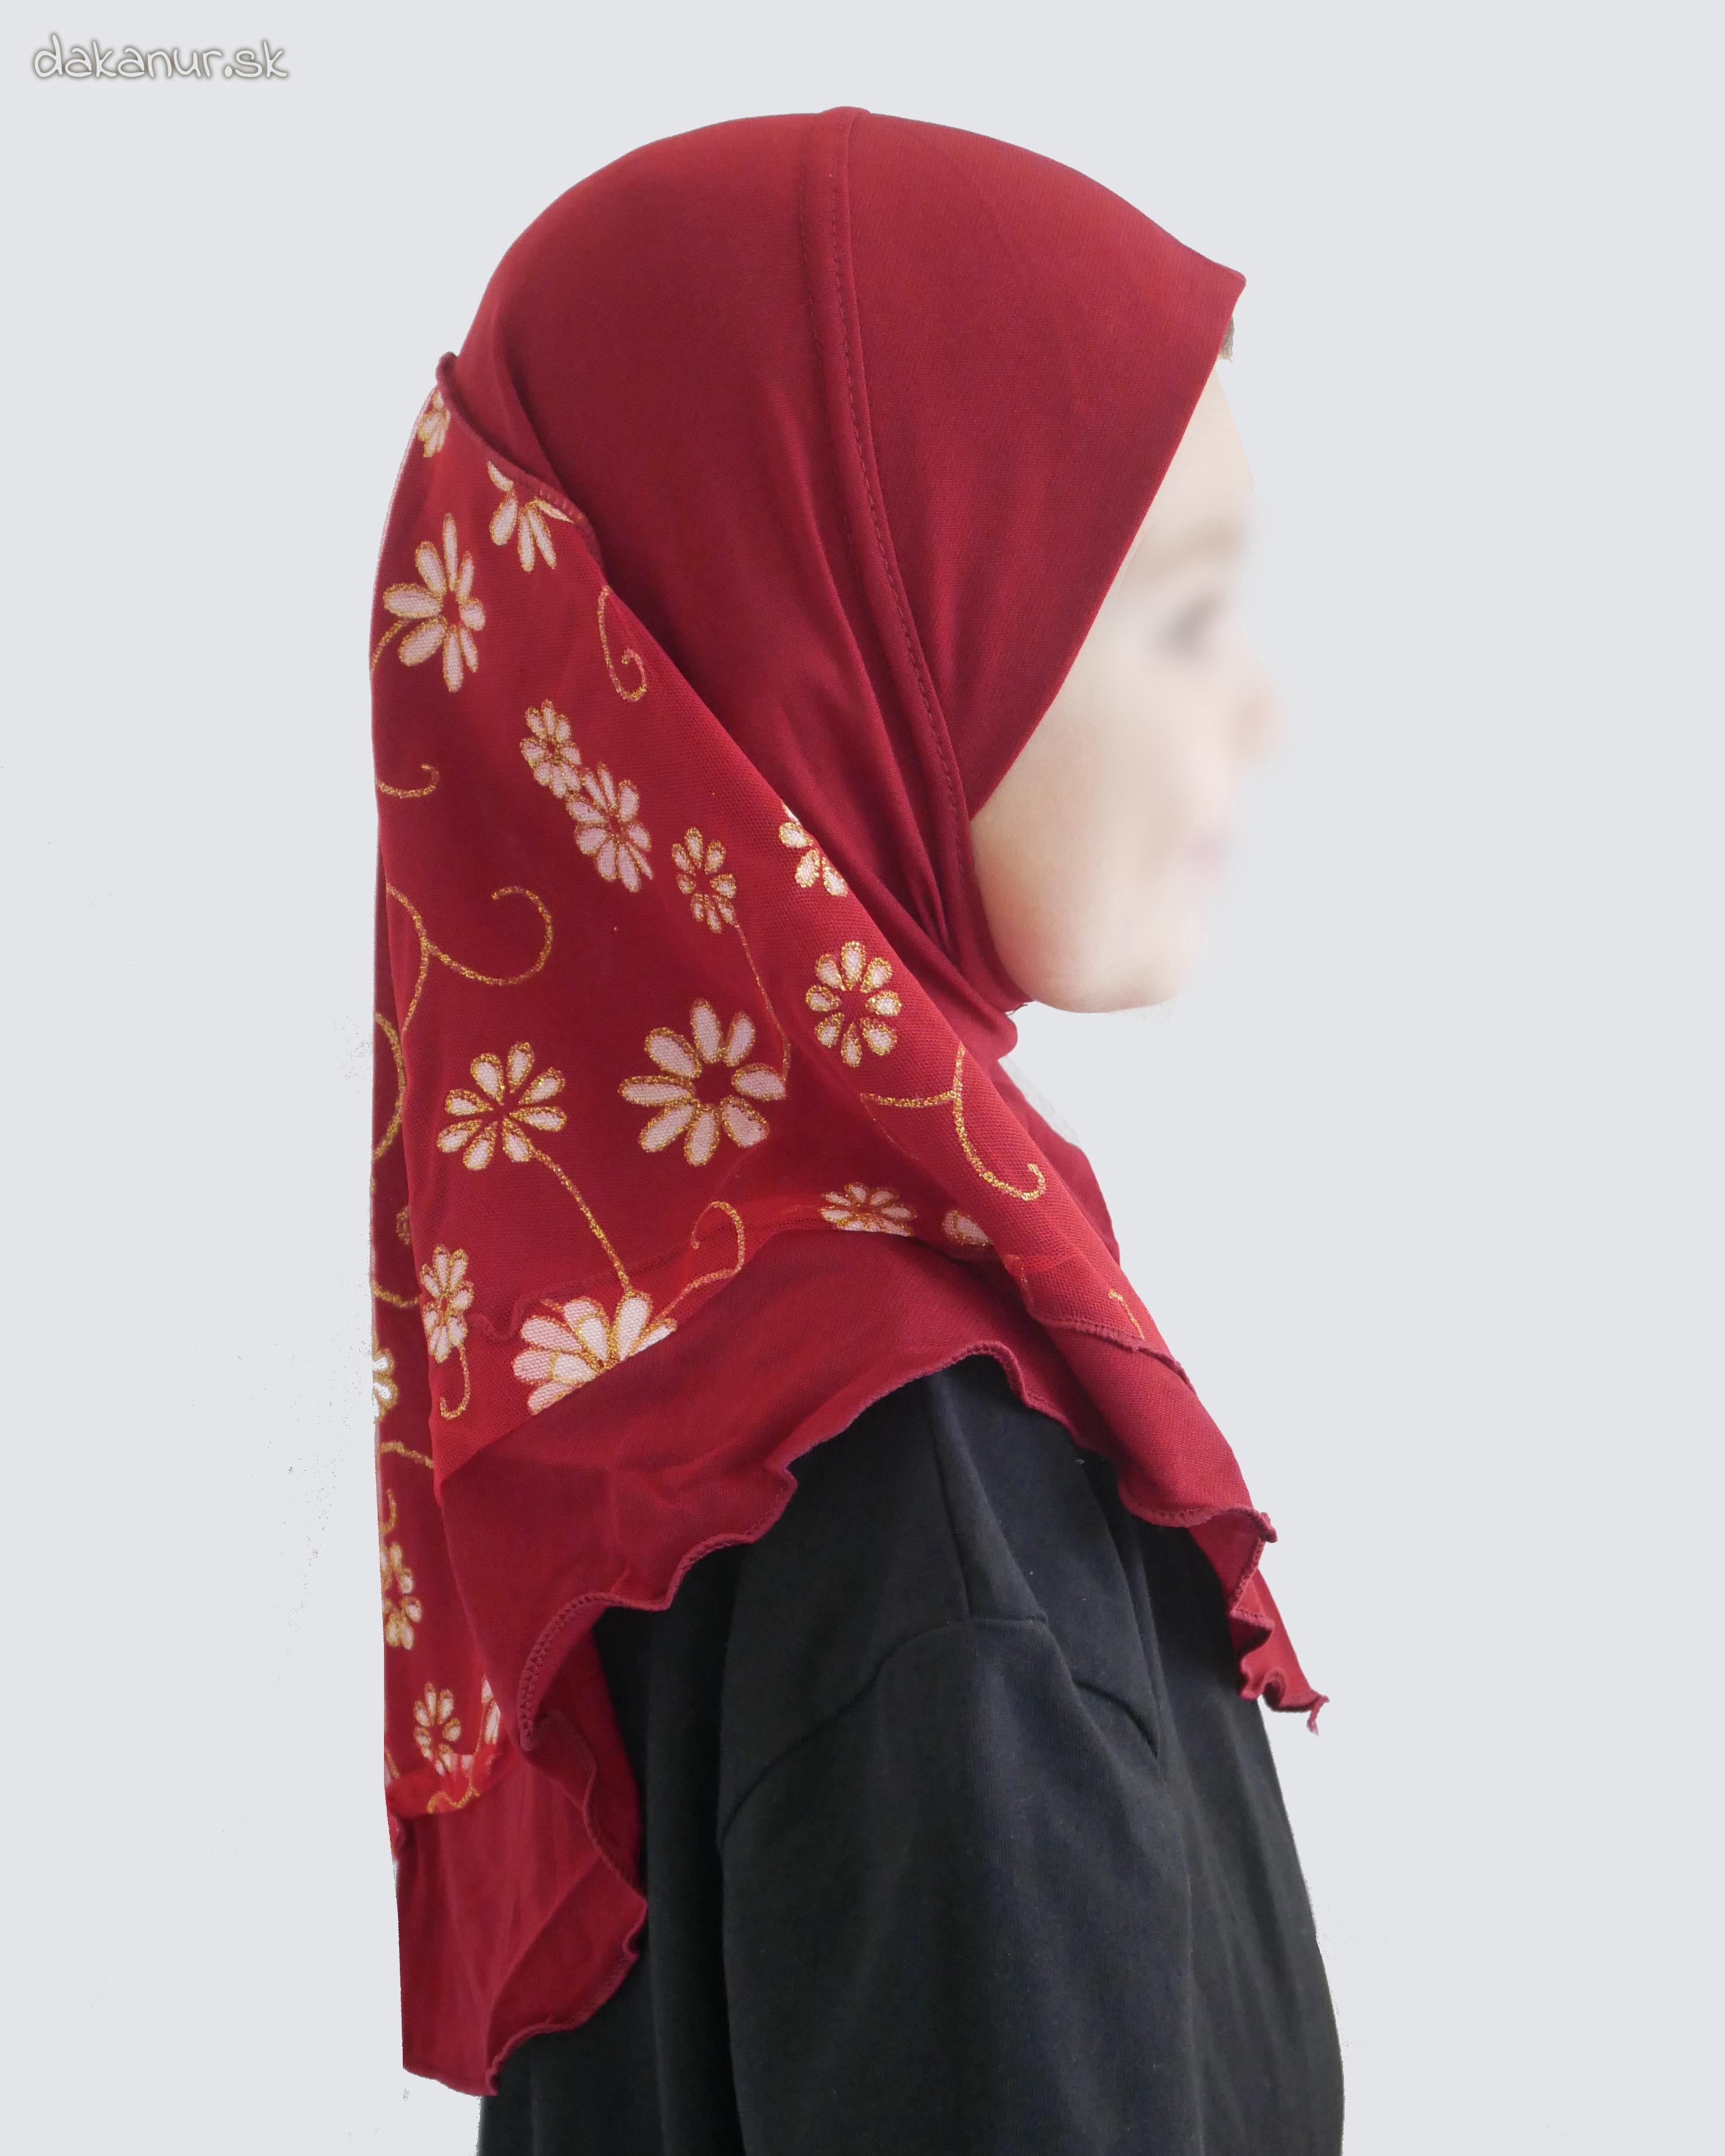 Detský bordový hijáb s kvietkovanou potlačou